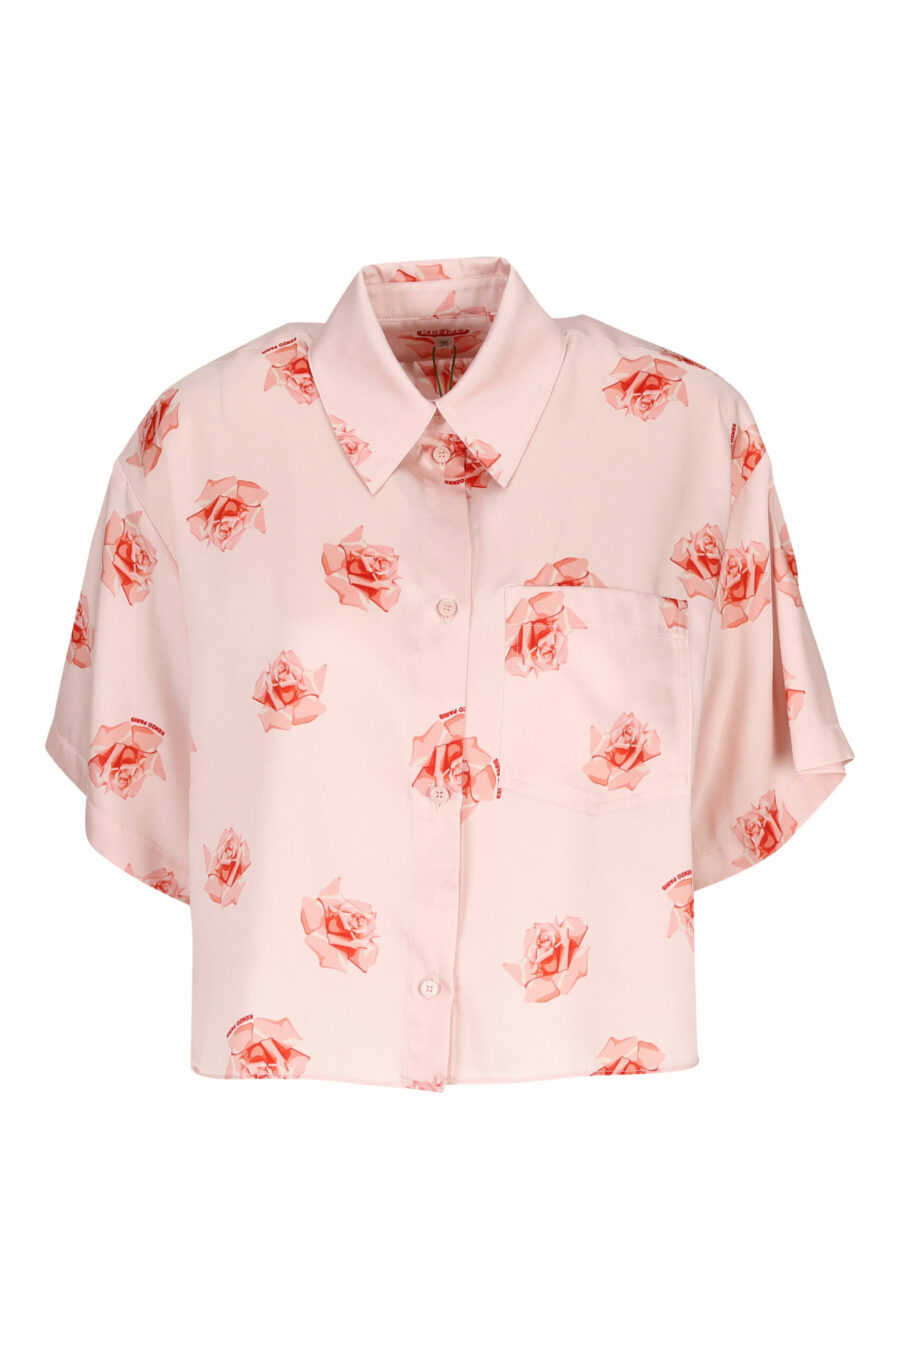 Camisa rosa manga corta con logo "kenzo rose" - 3612230604797 scaled